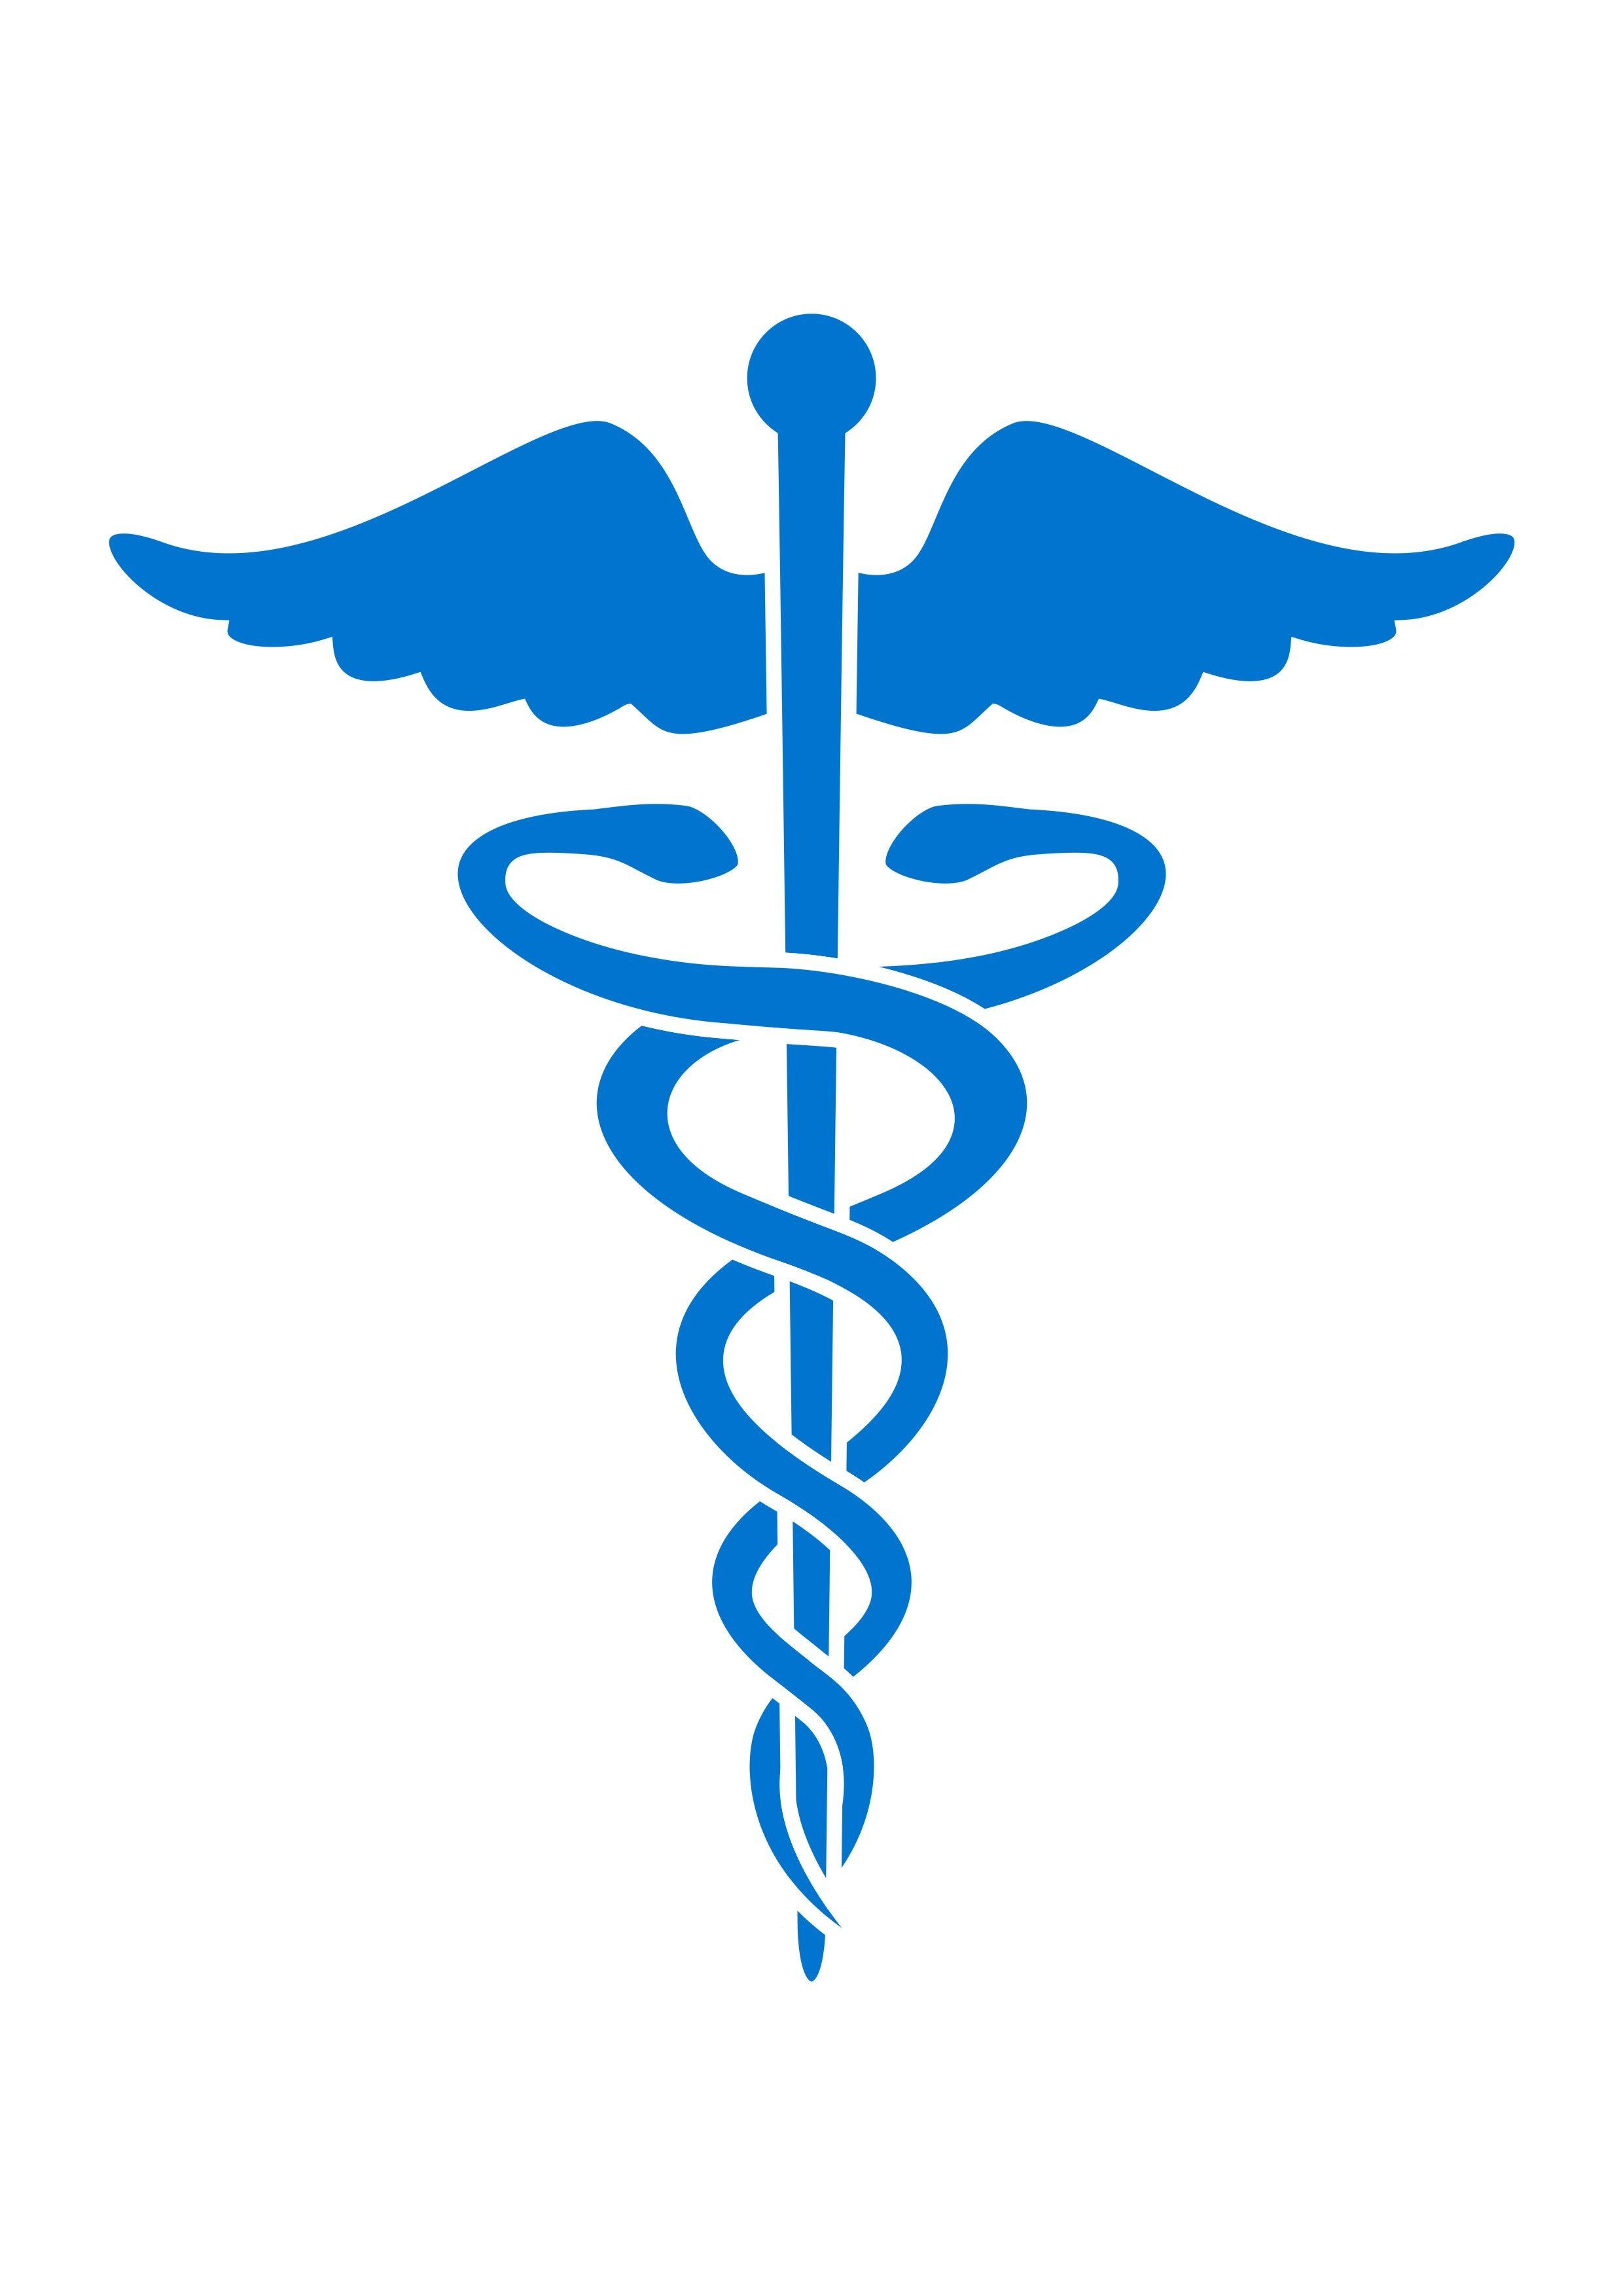 Medical Cross Snake Logo - Free Snake Health Cliparts, Download Free Clip Art, Free Clip Art on ...